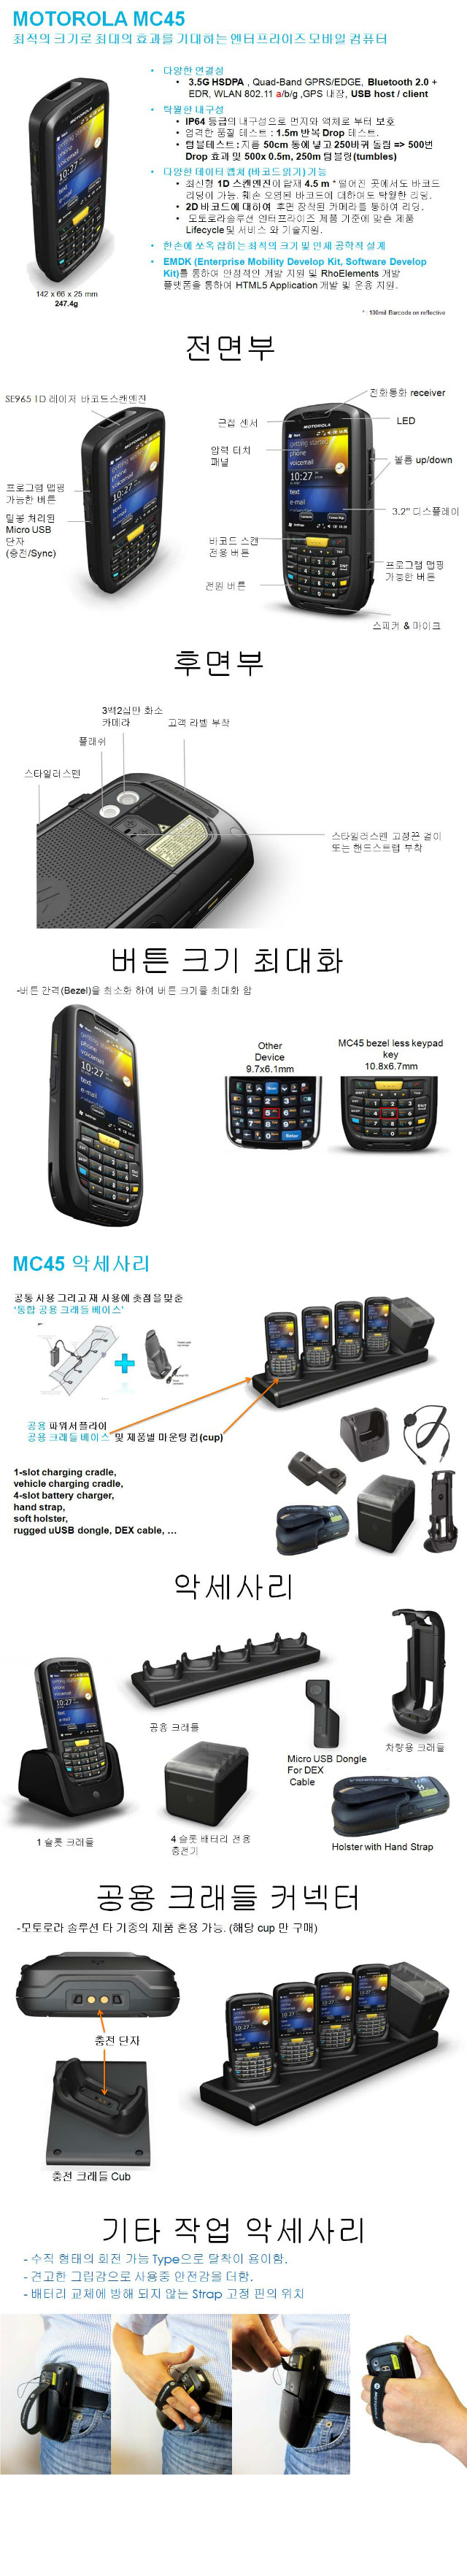 MC45_spec.jpg